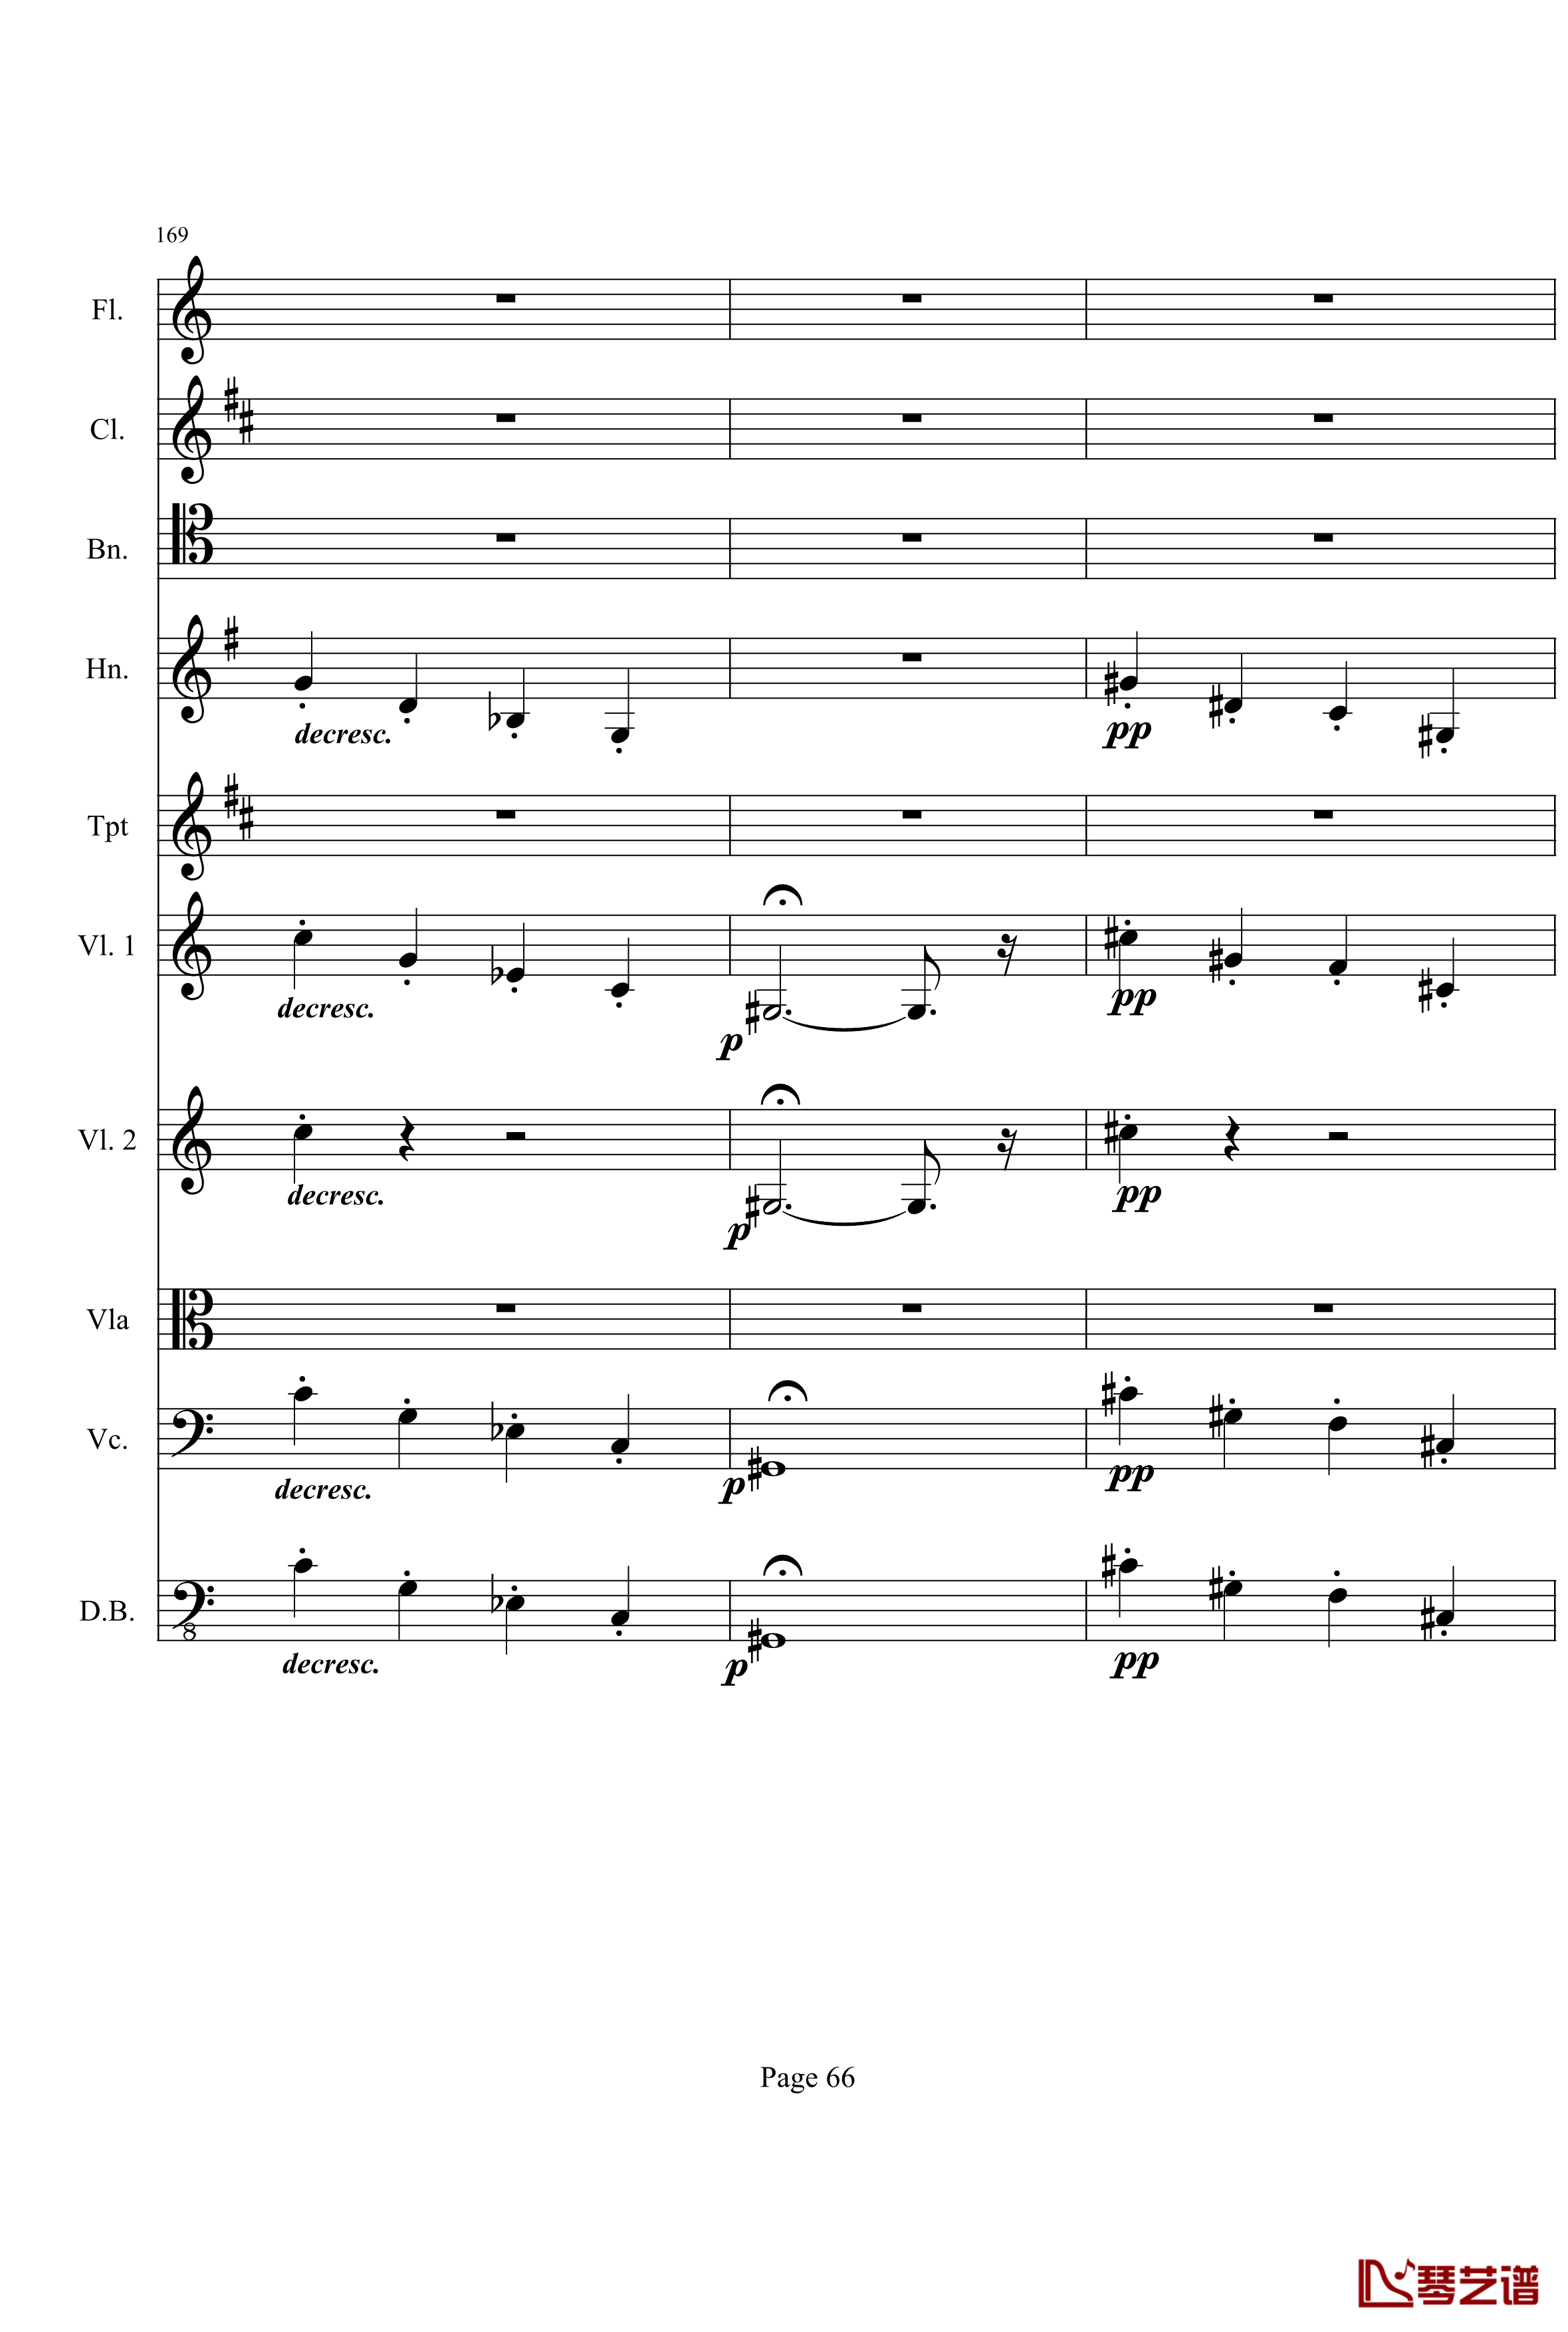 奏鸣曲之交响钢琴谱-第21-Ⅰ-贝多芬-beethoven66